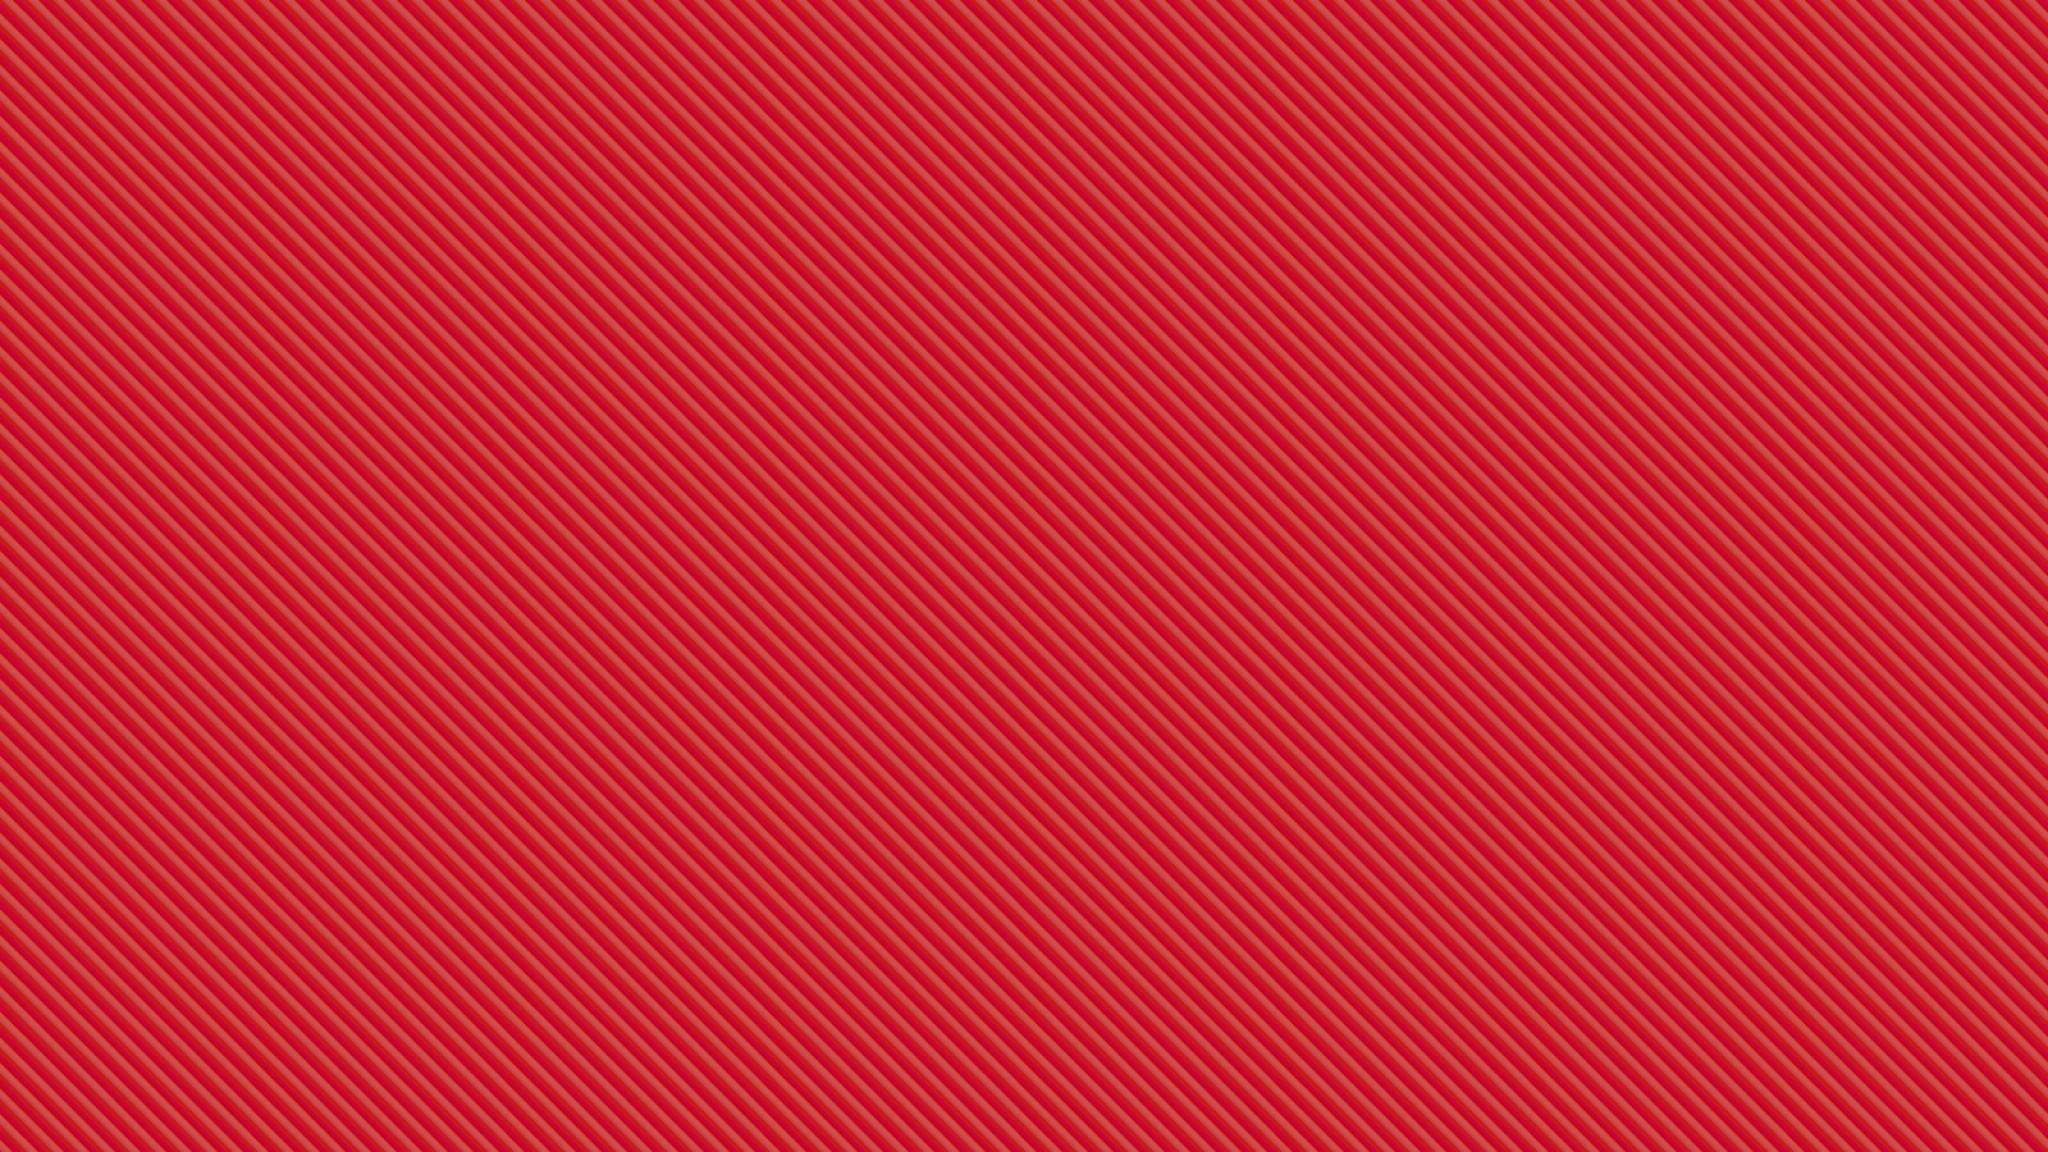 Hình nền đỏ:
Chào mừng đến với công nghệ mới, hình nền đỏ sẽ mang đến cho bạn một trải nghiệm tuyệt vời khi trang trí thiết bị của mình. Với những họa tiết độc đáo, sắc đỏ truyền tải năng lượng tích cực, sẽ giúp bạn đánh thức sự nhiệt huyết và tinh thần cầu tiến.